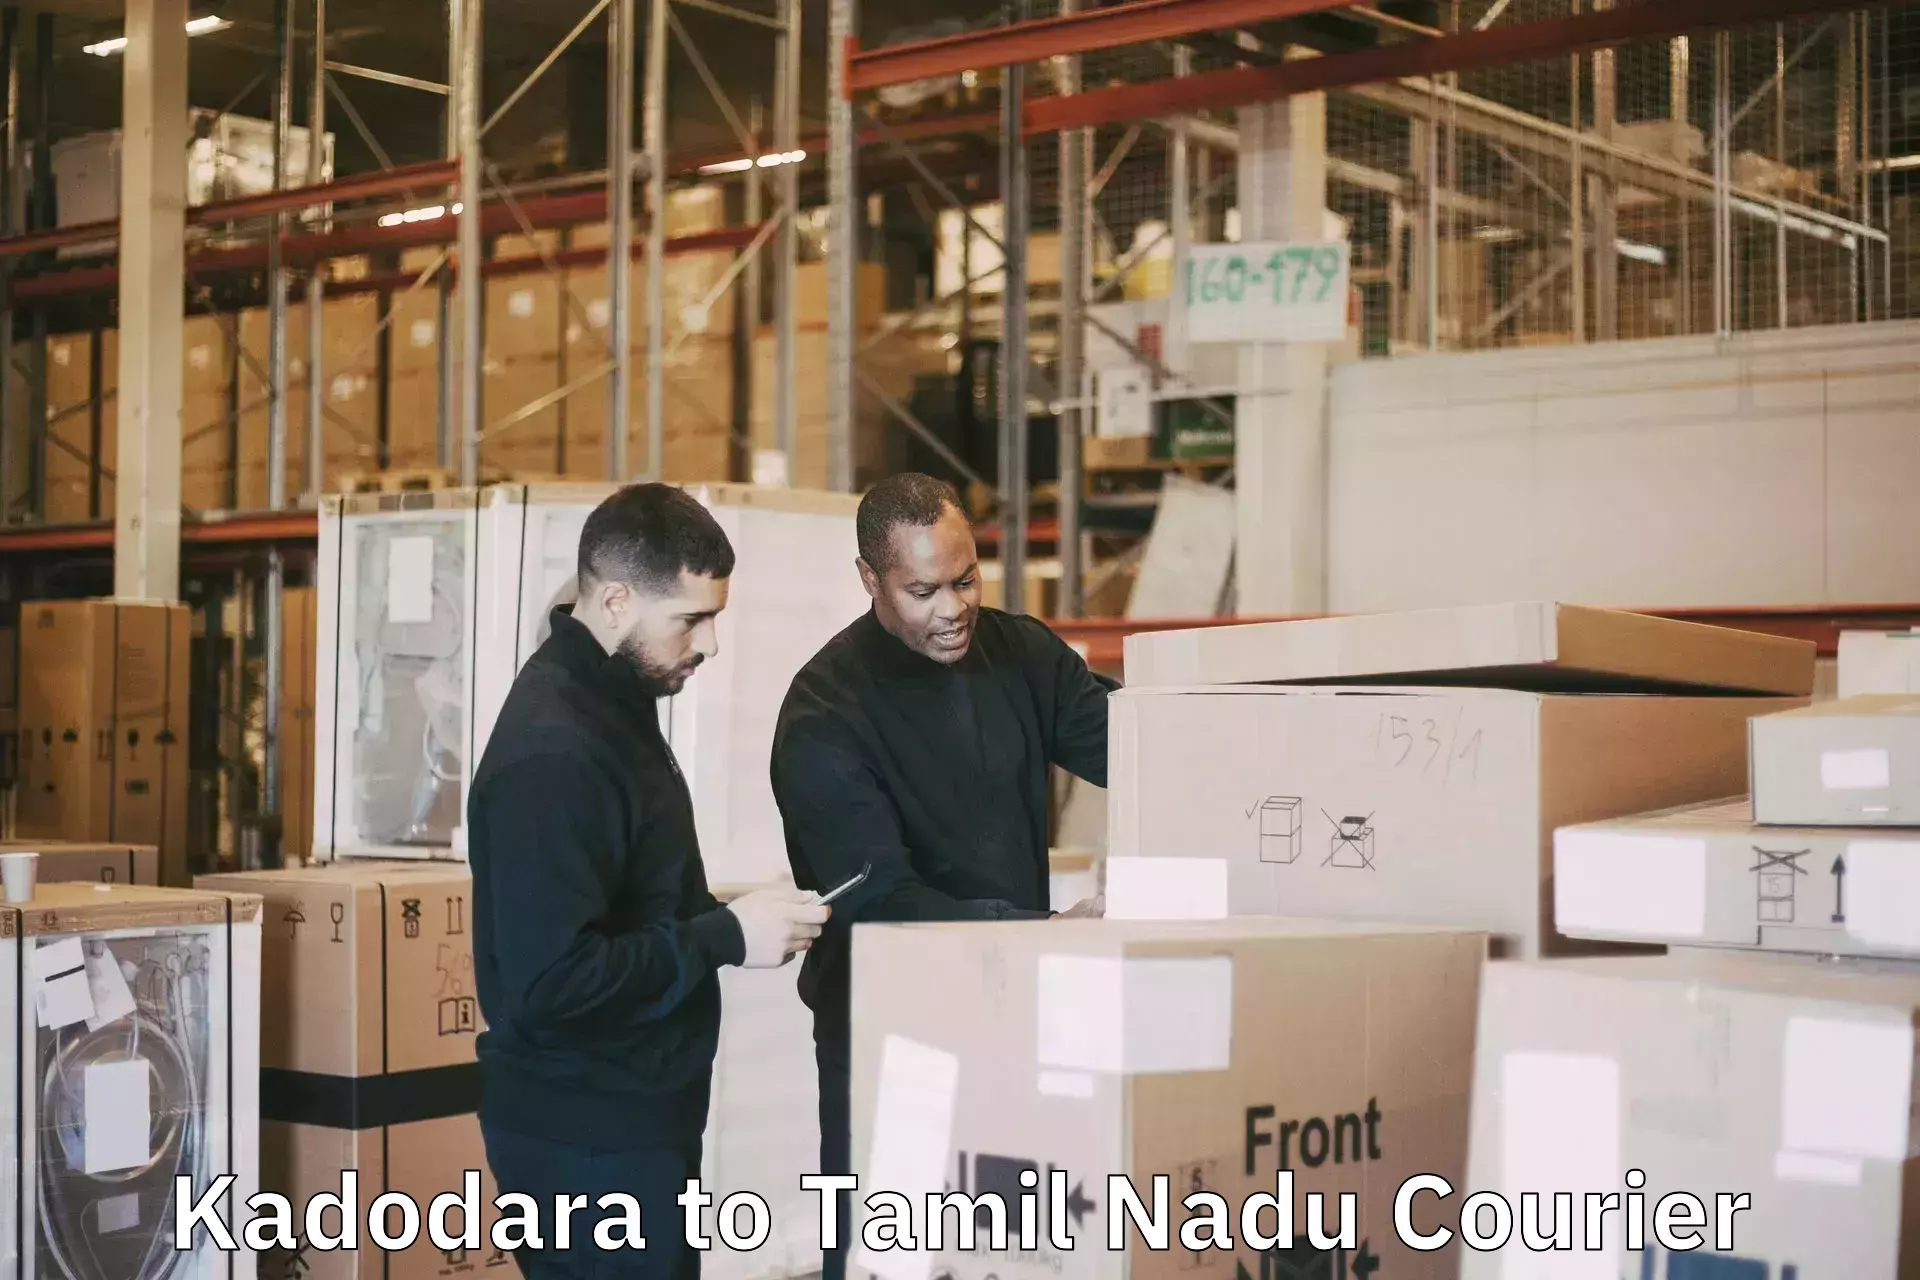 Luggage shipment specialists Kadodara to Thiruvadanai